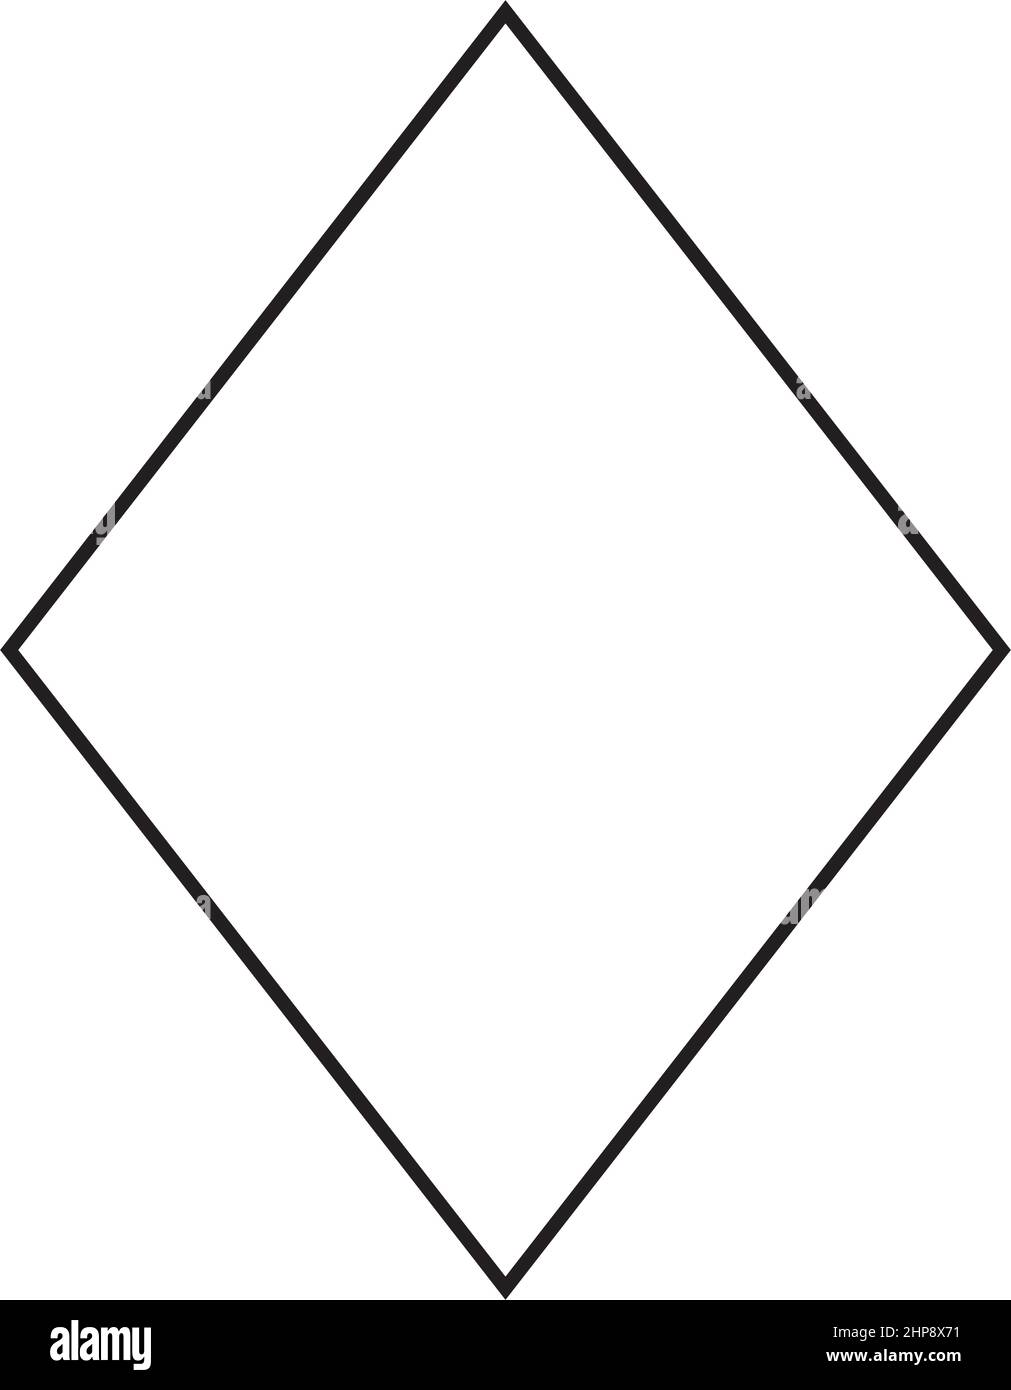 Simbolo di forma Rhombus icona vettoriale tratto di contorno per un elemento ui di grafica creativa in un'illustrazione di pittogramma Illustrazione Vettoriale